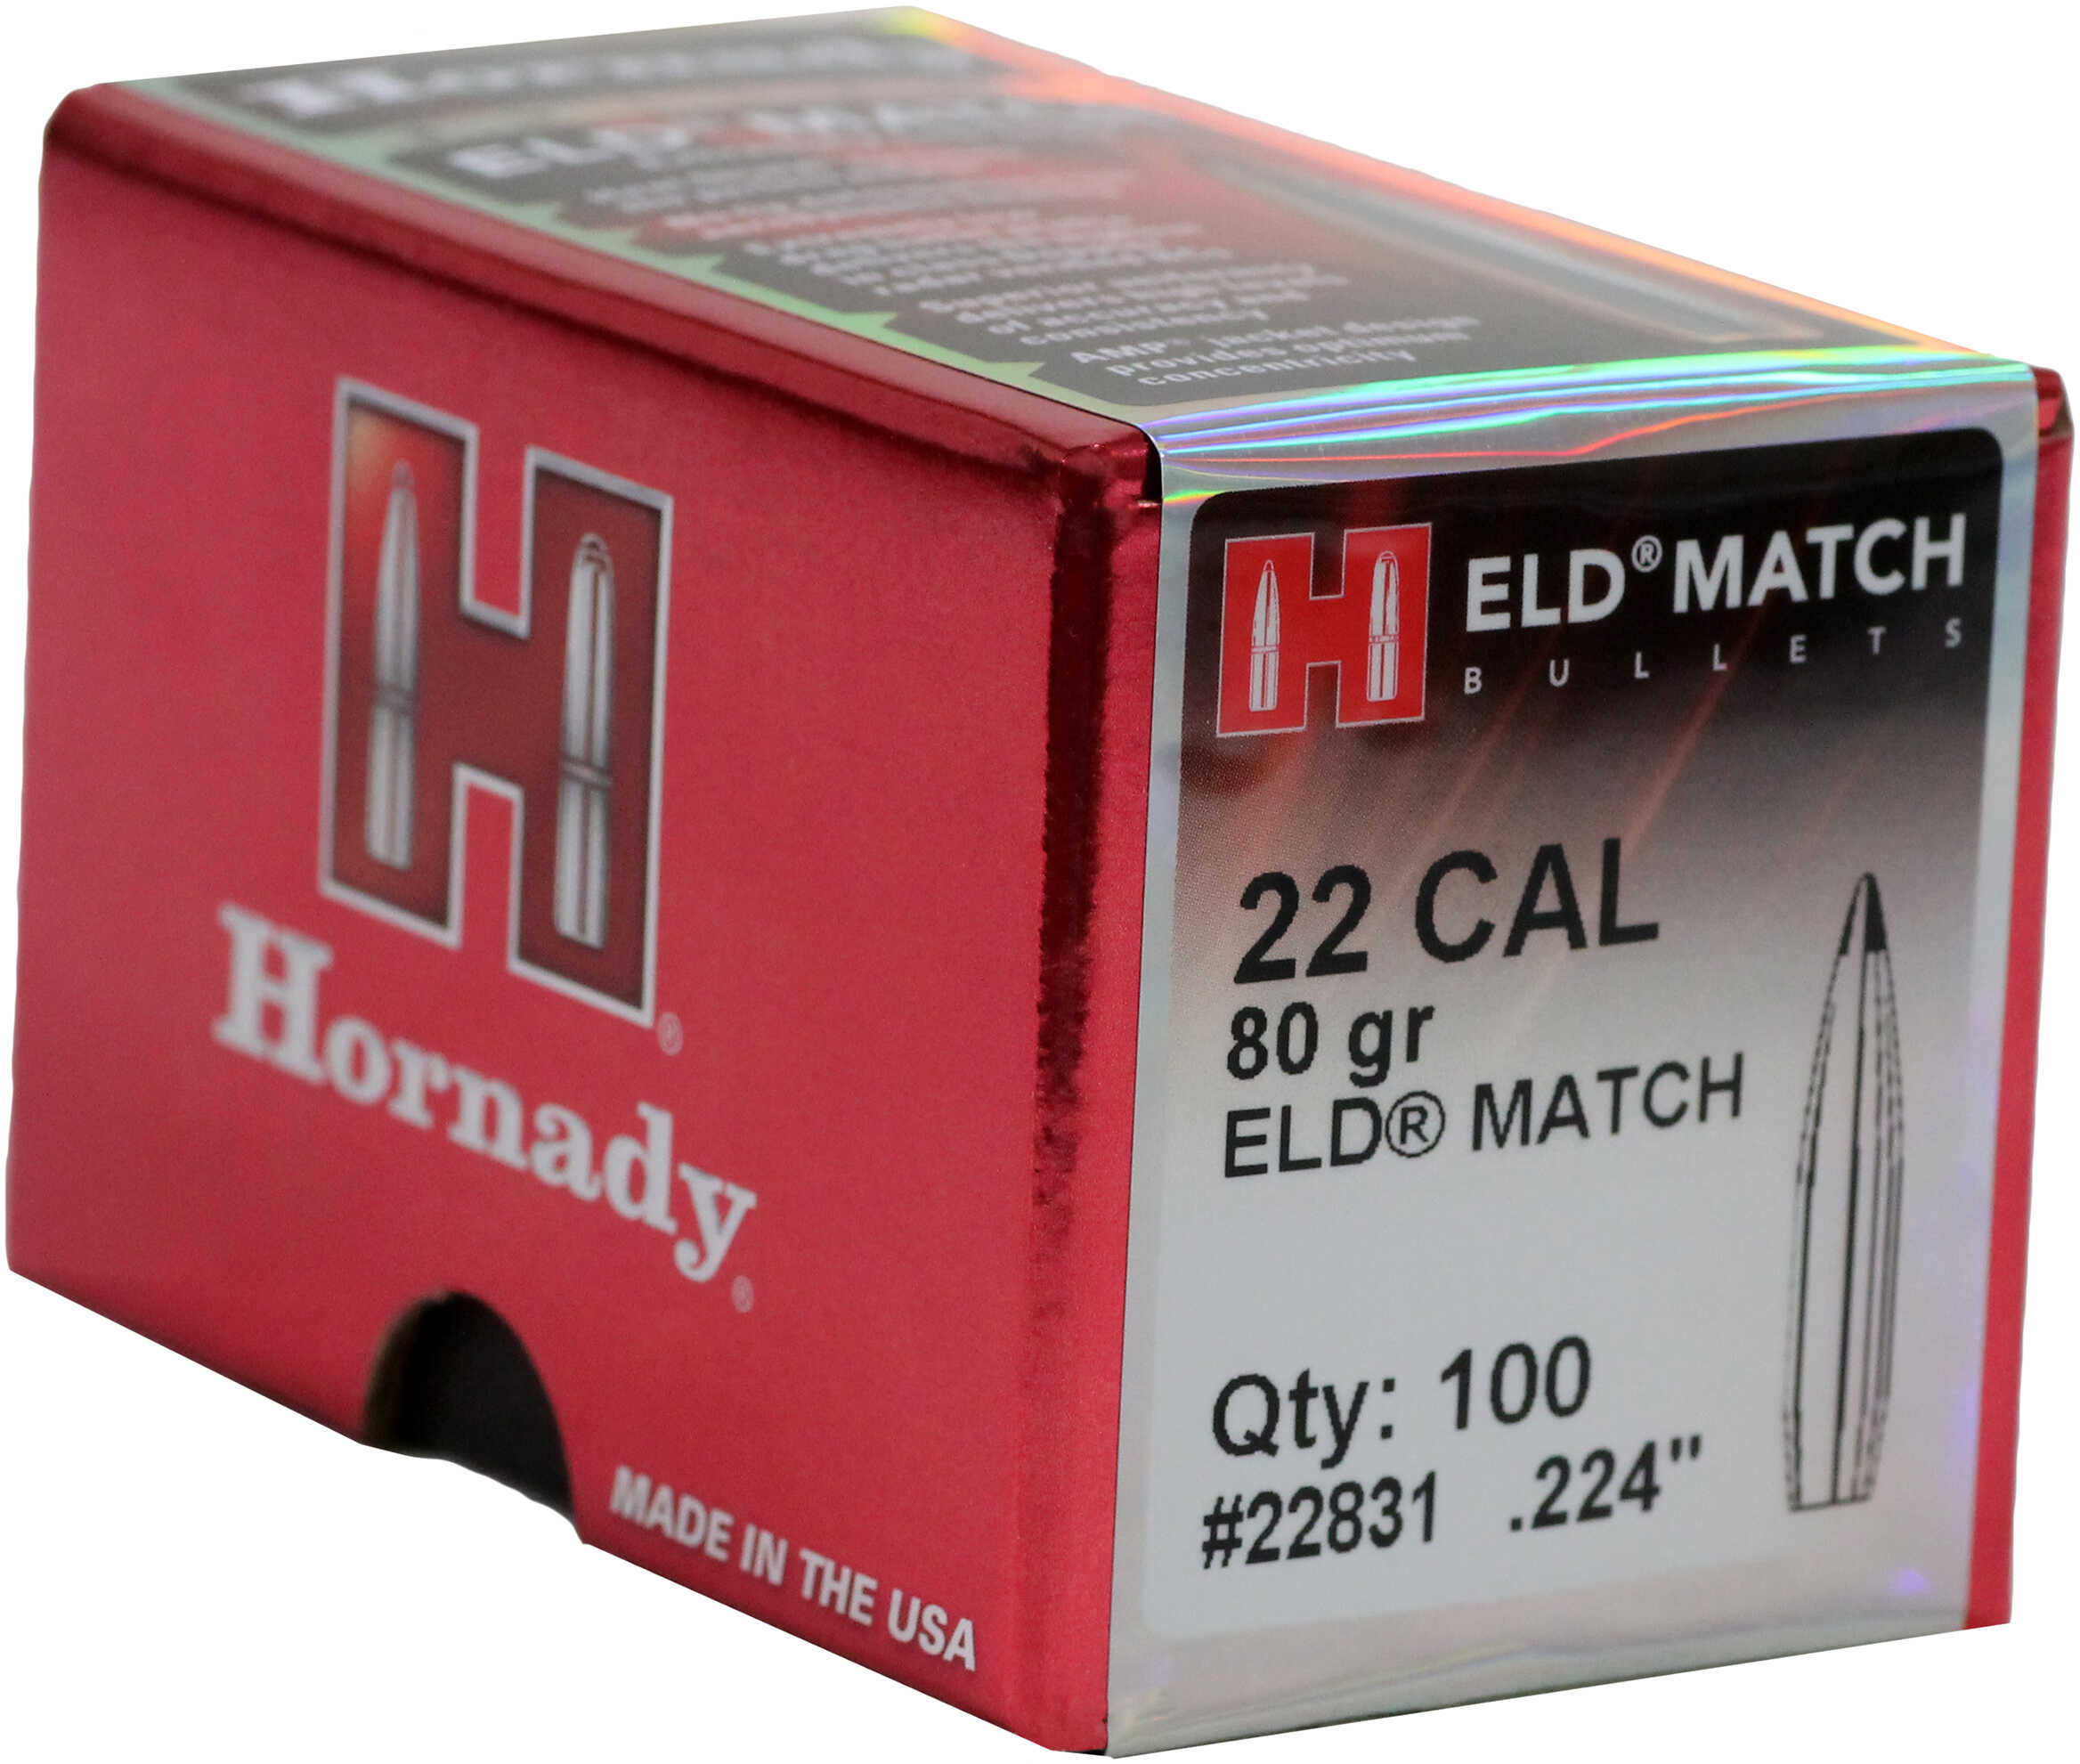 Hornady bullet 22Cal 80Gr ELD Match 100/30